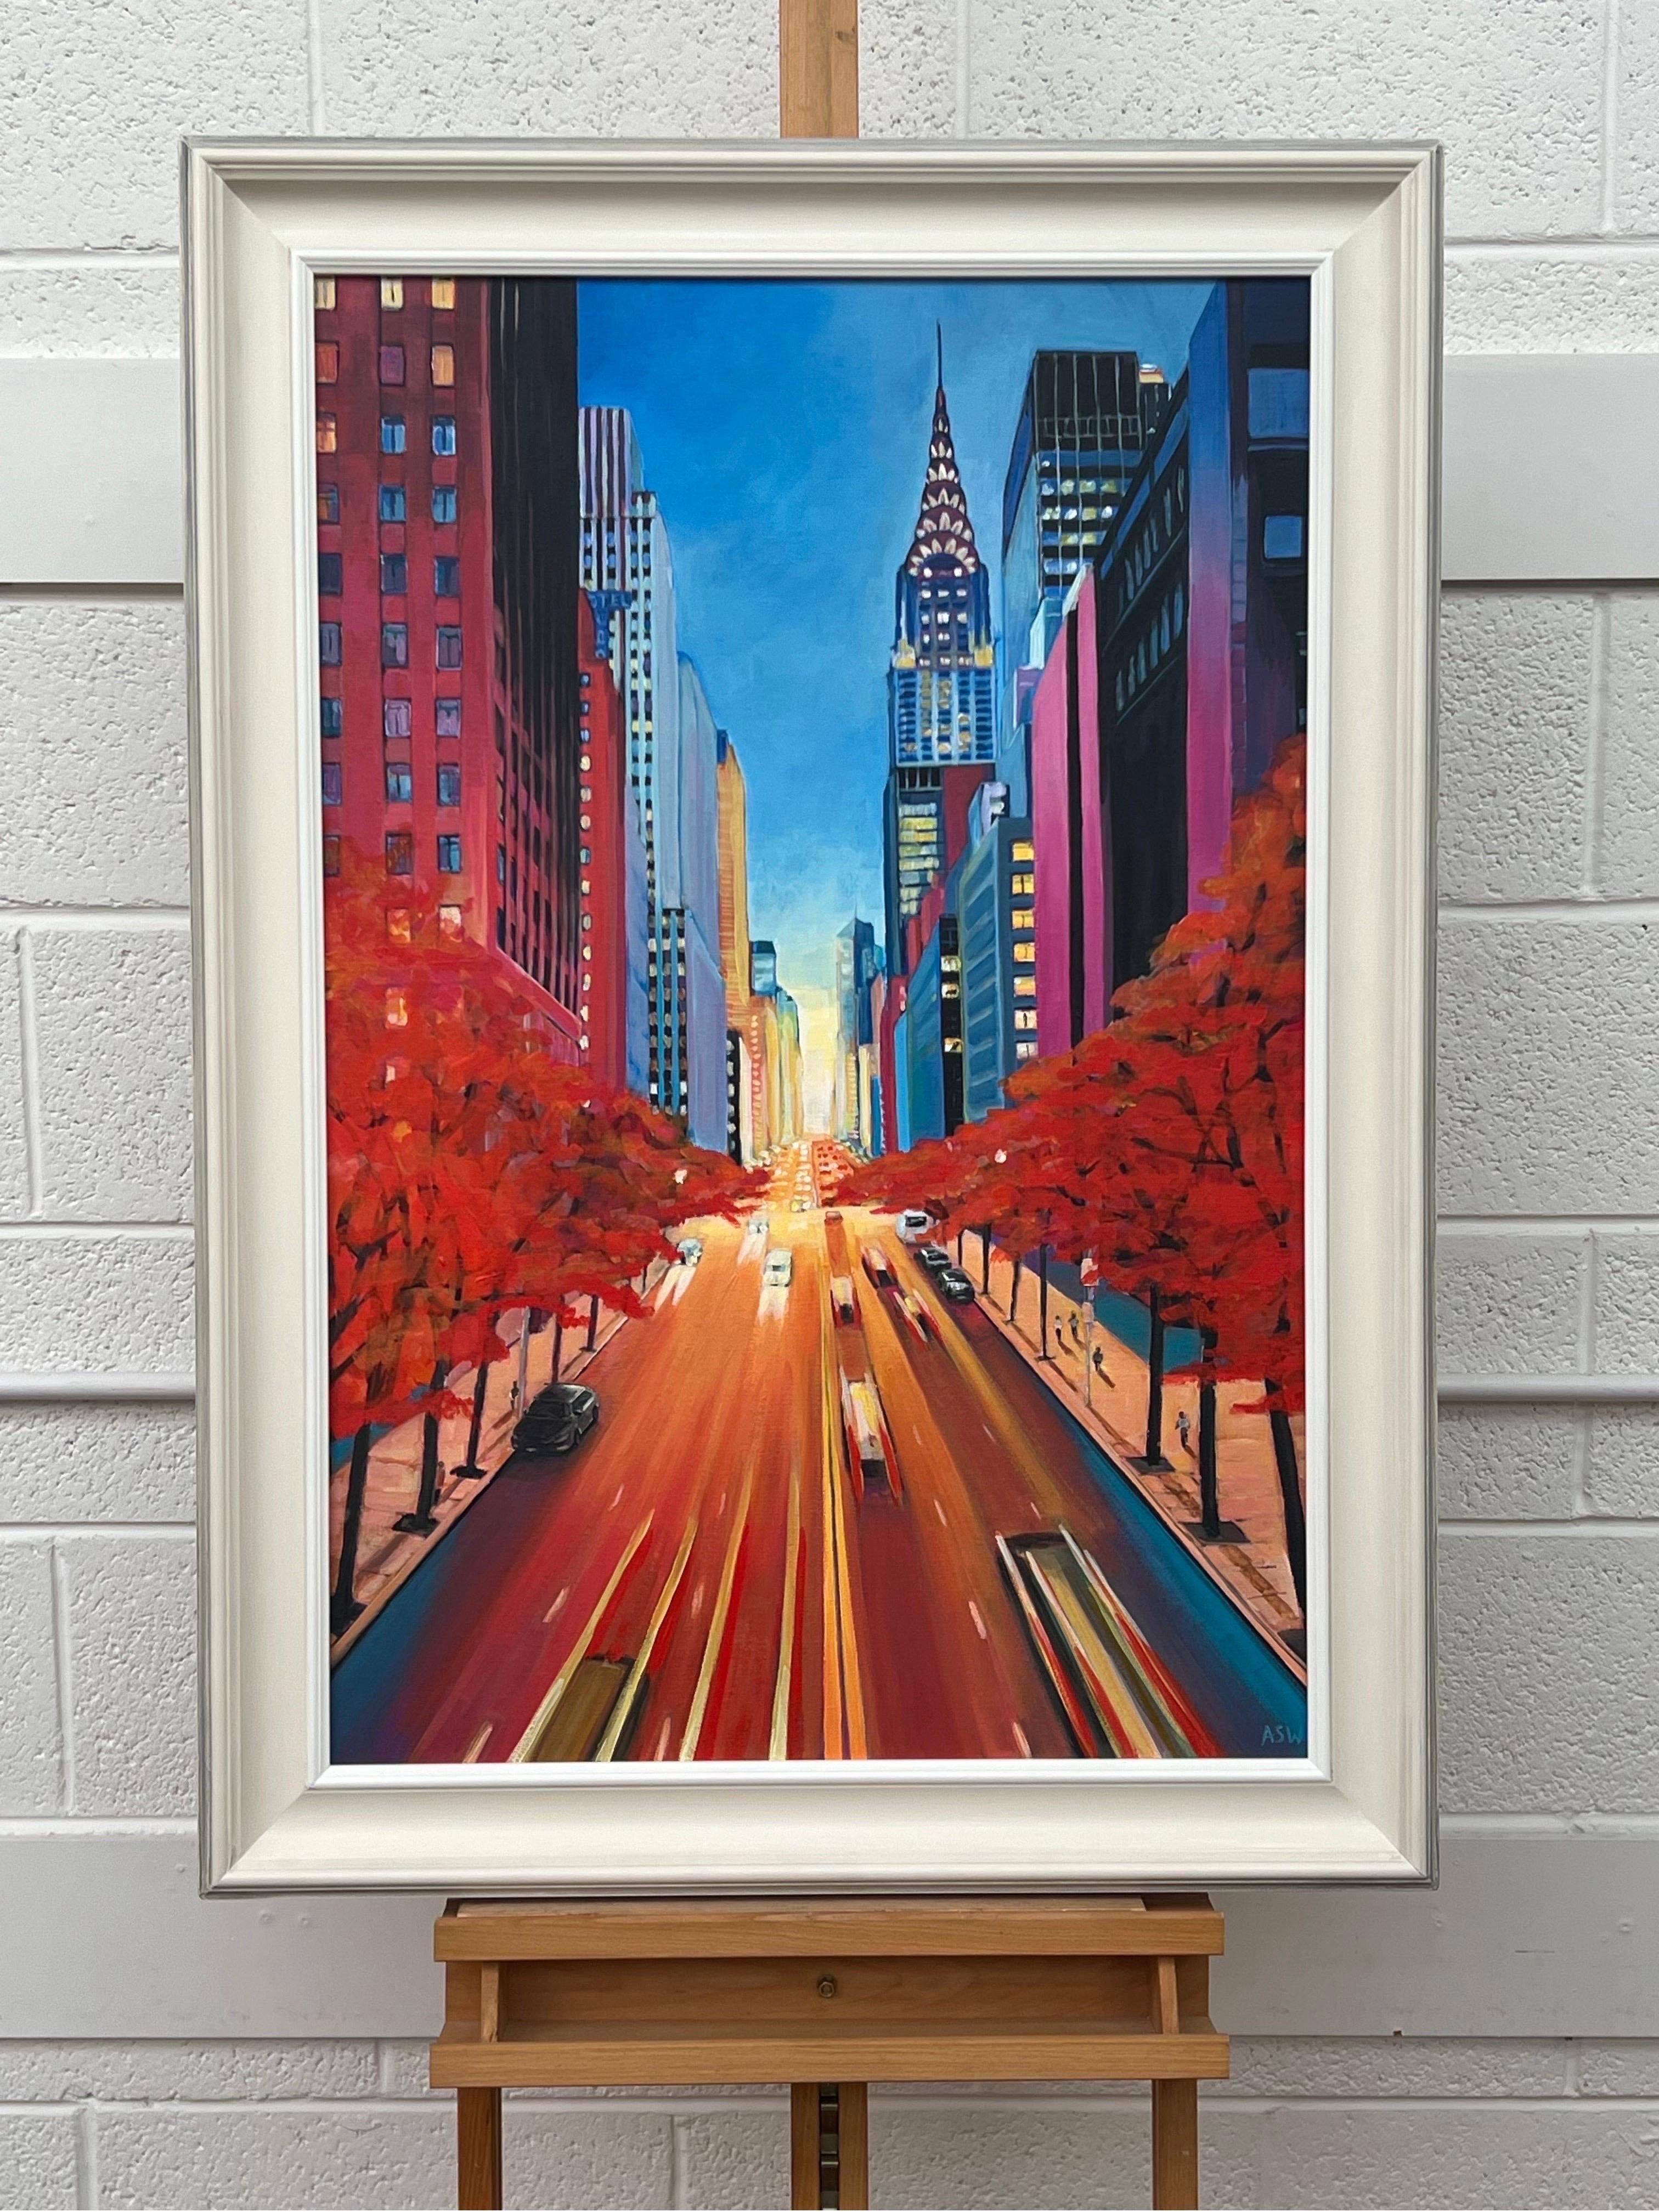 Gemälde des Chrysler Building 42nd Street New York City von der zeitgenössischen britischen Künstlerin Angela Wakefield.

Kunst misst 24 x 36 Zoll
Rahmen misst 30 x 42 Zoll

Eingerahmt in eine hochwertige, cremefarbene, handgefertigte